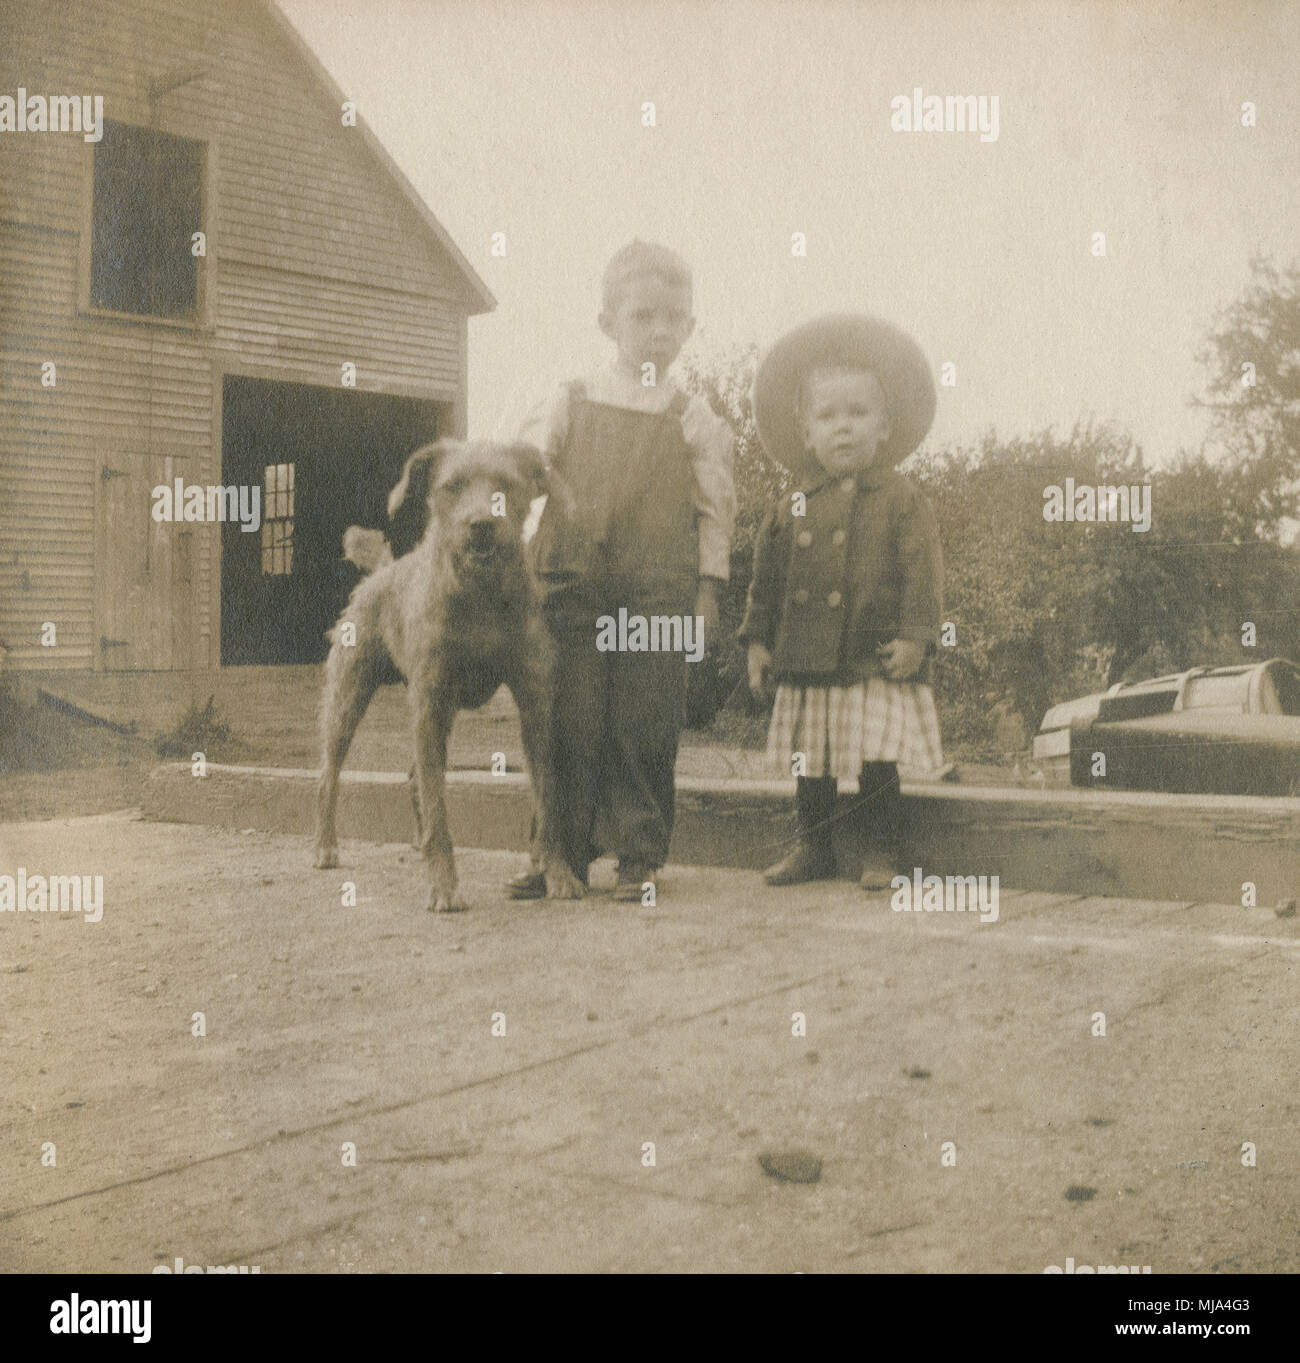 Antique c1904 fotografia, due giovani ragazzi e cane vicino fienile. Posizione sconosciuta, probabilmente la Nuova Inghilterra, Stati Uniti d'America. Fonte: originale stampa fotografica. Foto Stock